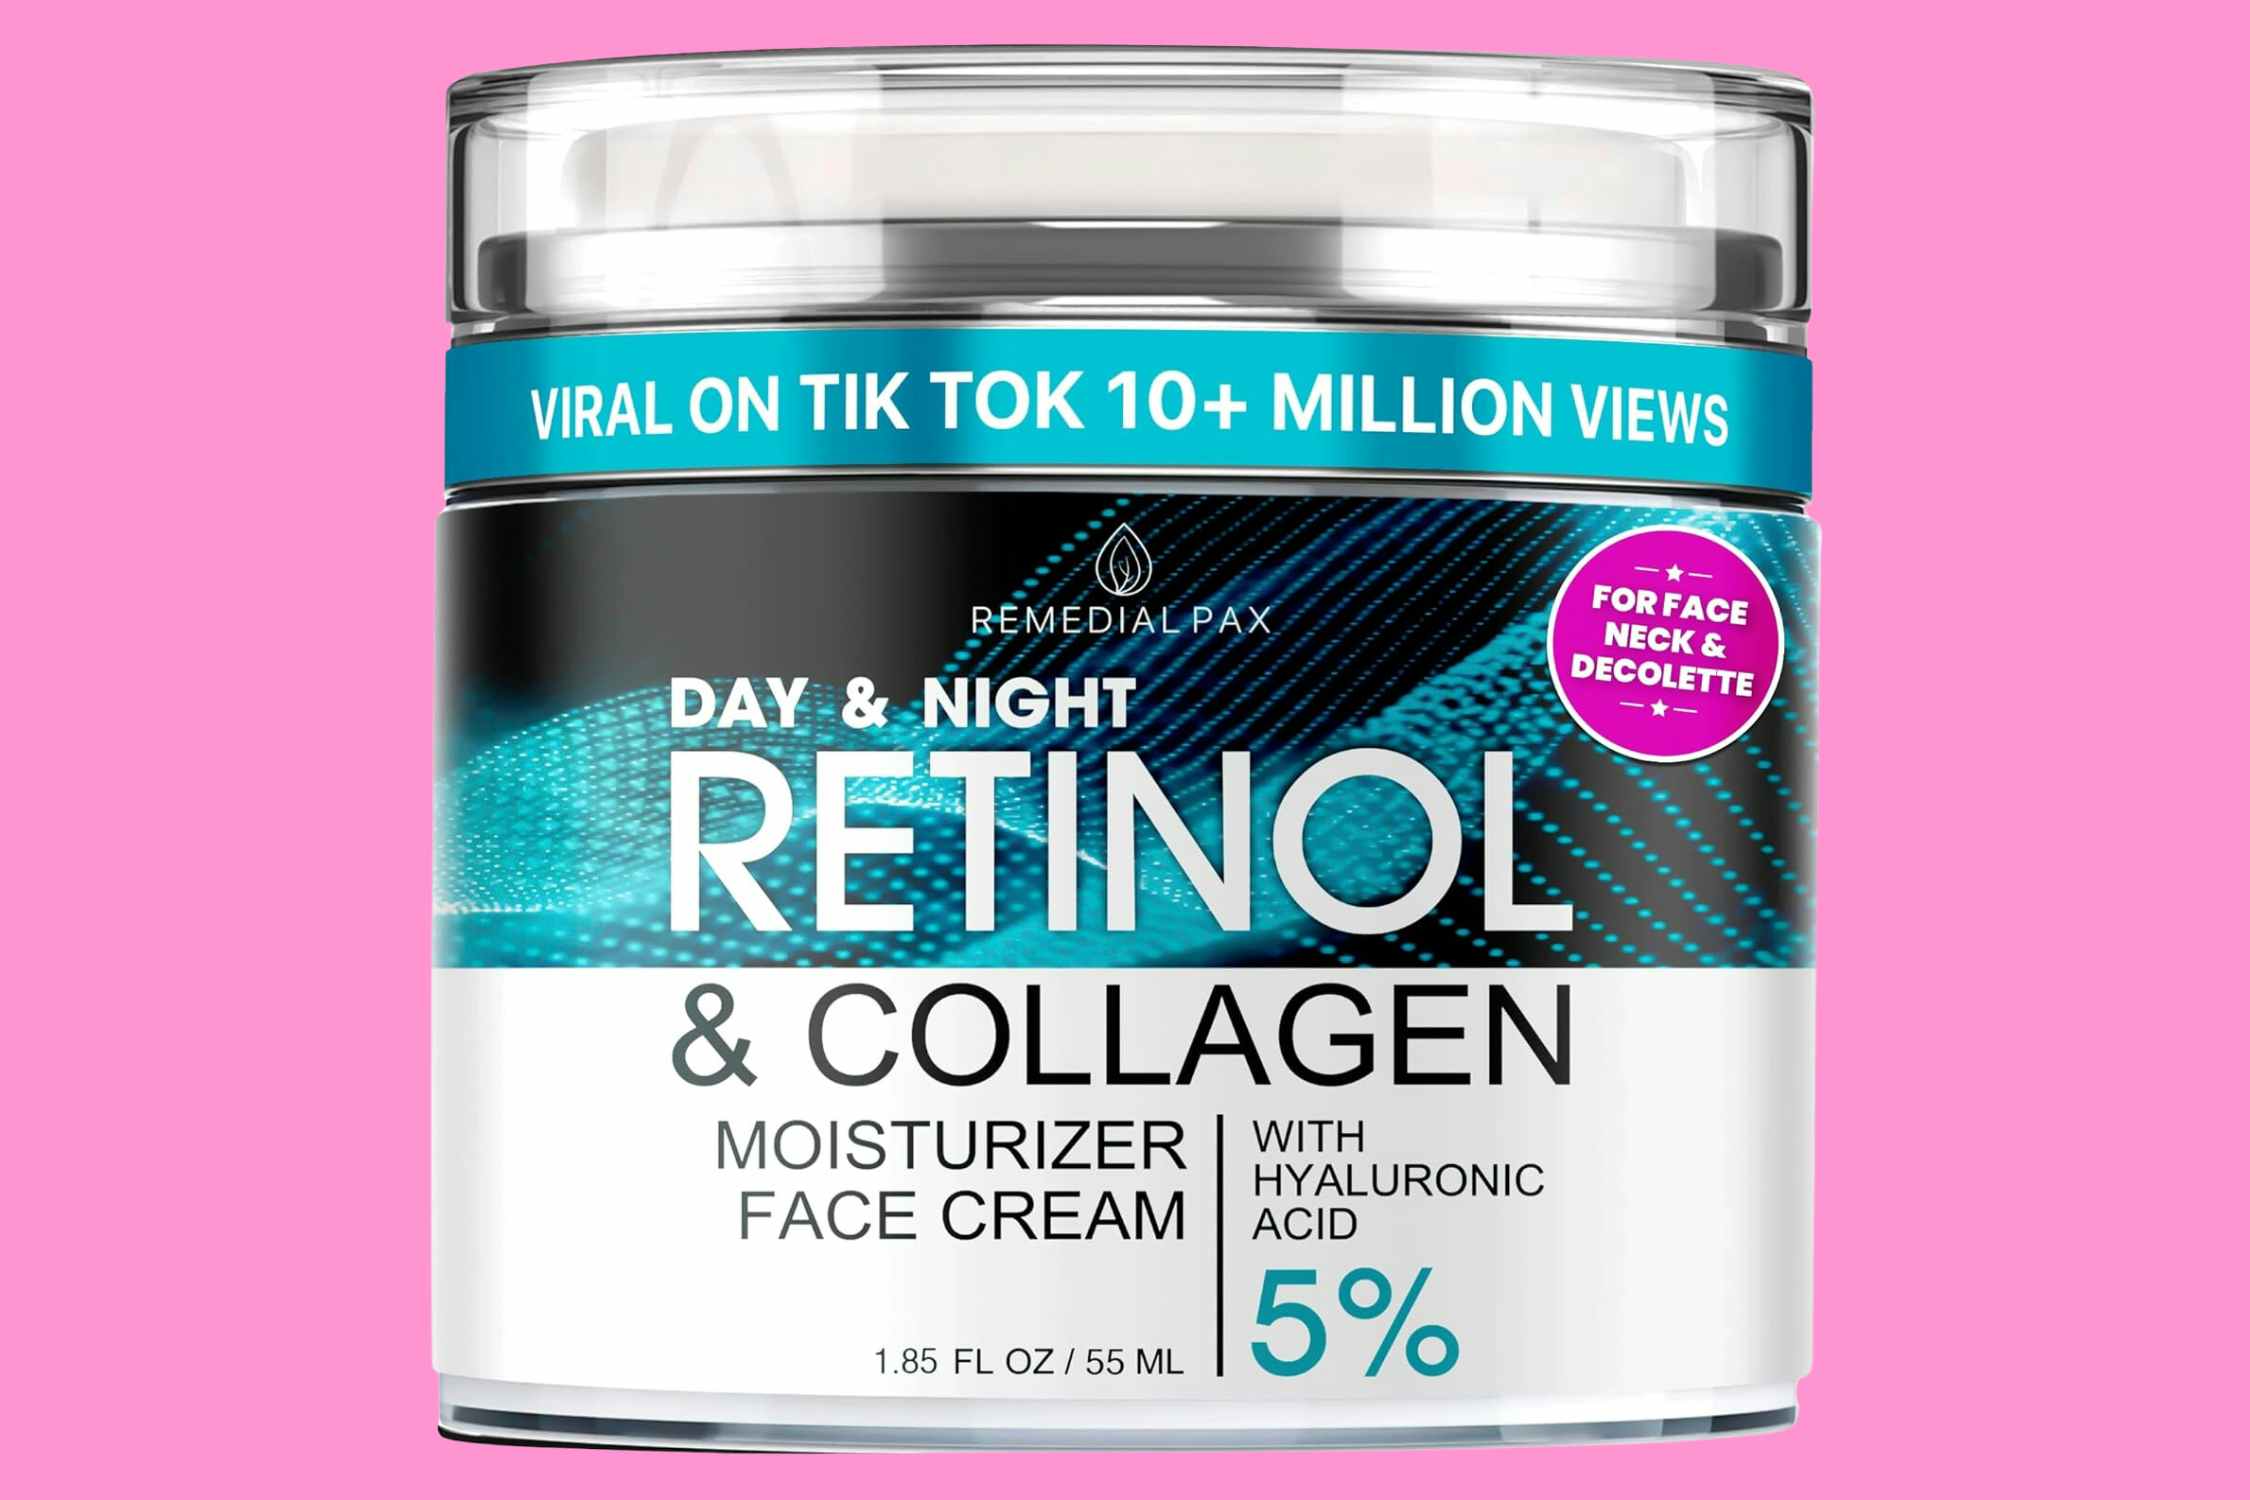 Retinol Cream Moisturizer, as Low as $7.19 on Amazon (Reg. $30)